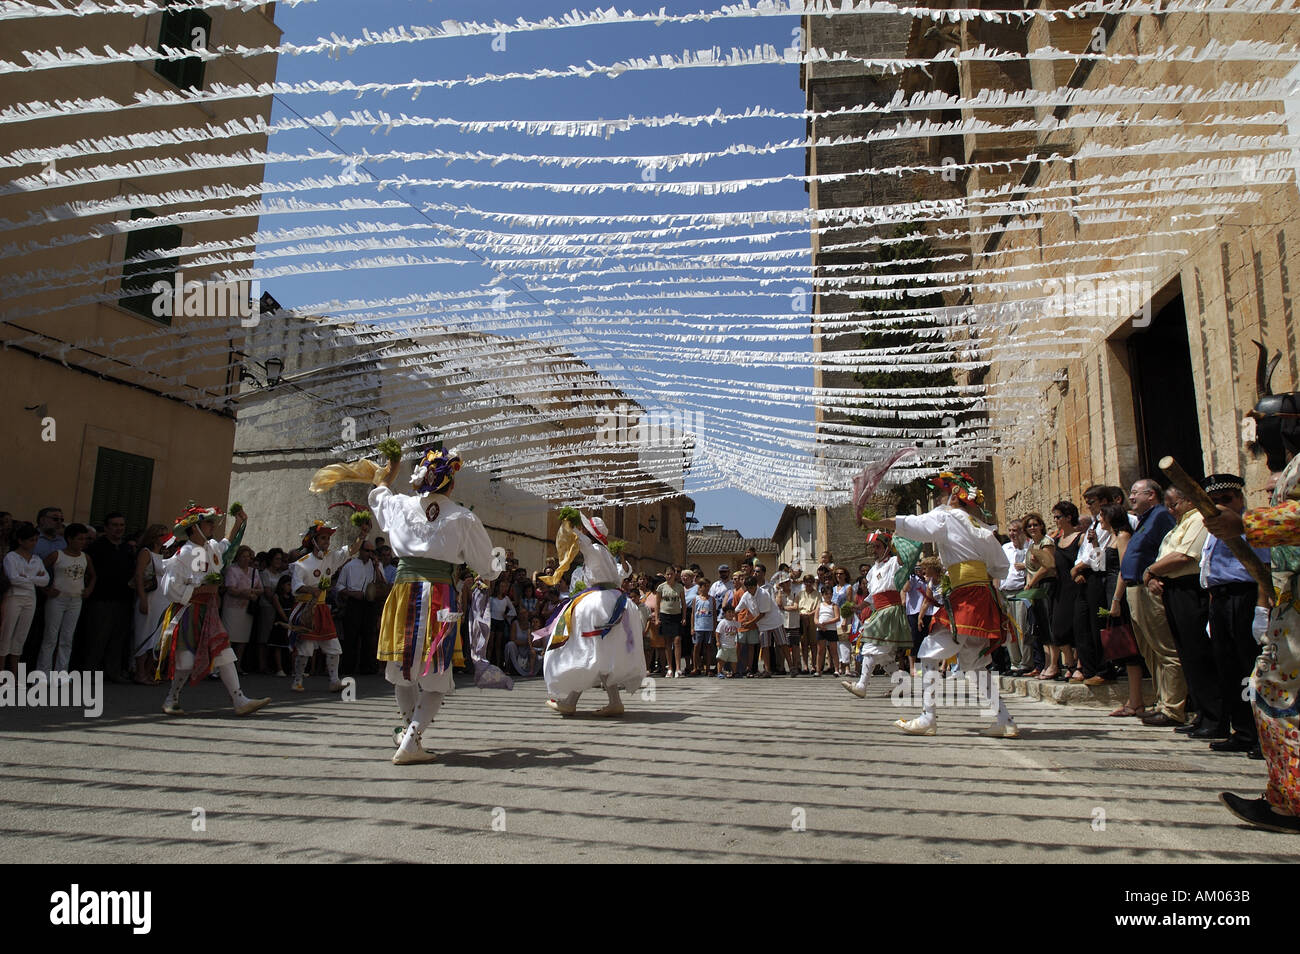 Dance of the Cossiers in Algaida, Mallorca. Stock Photo